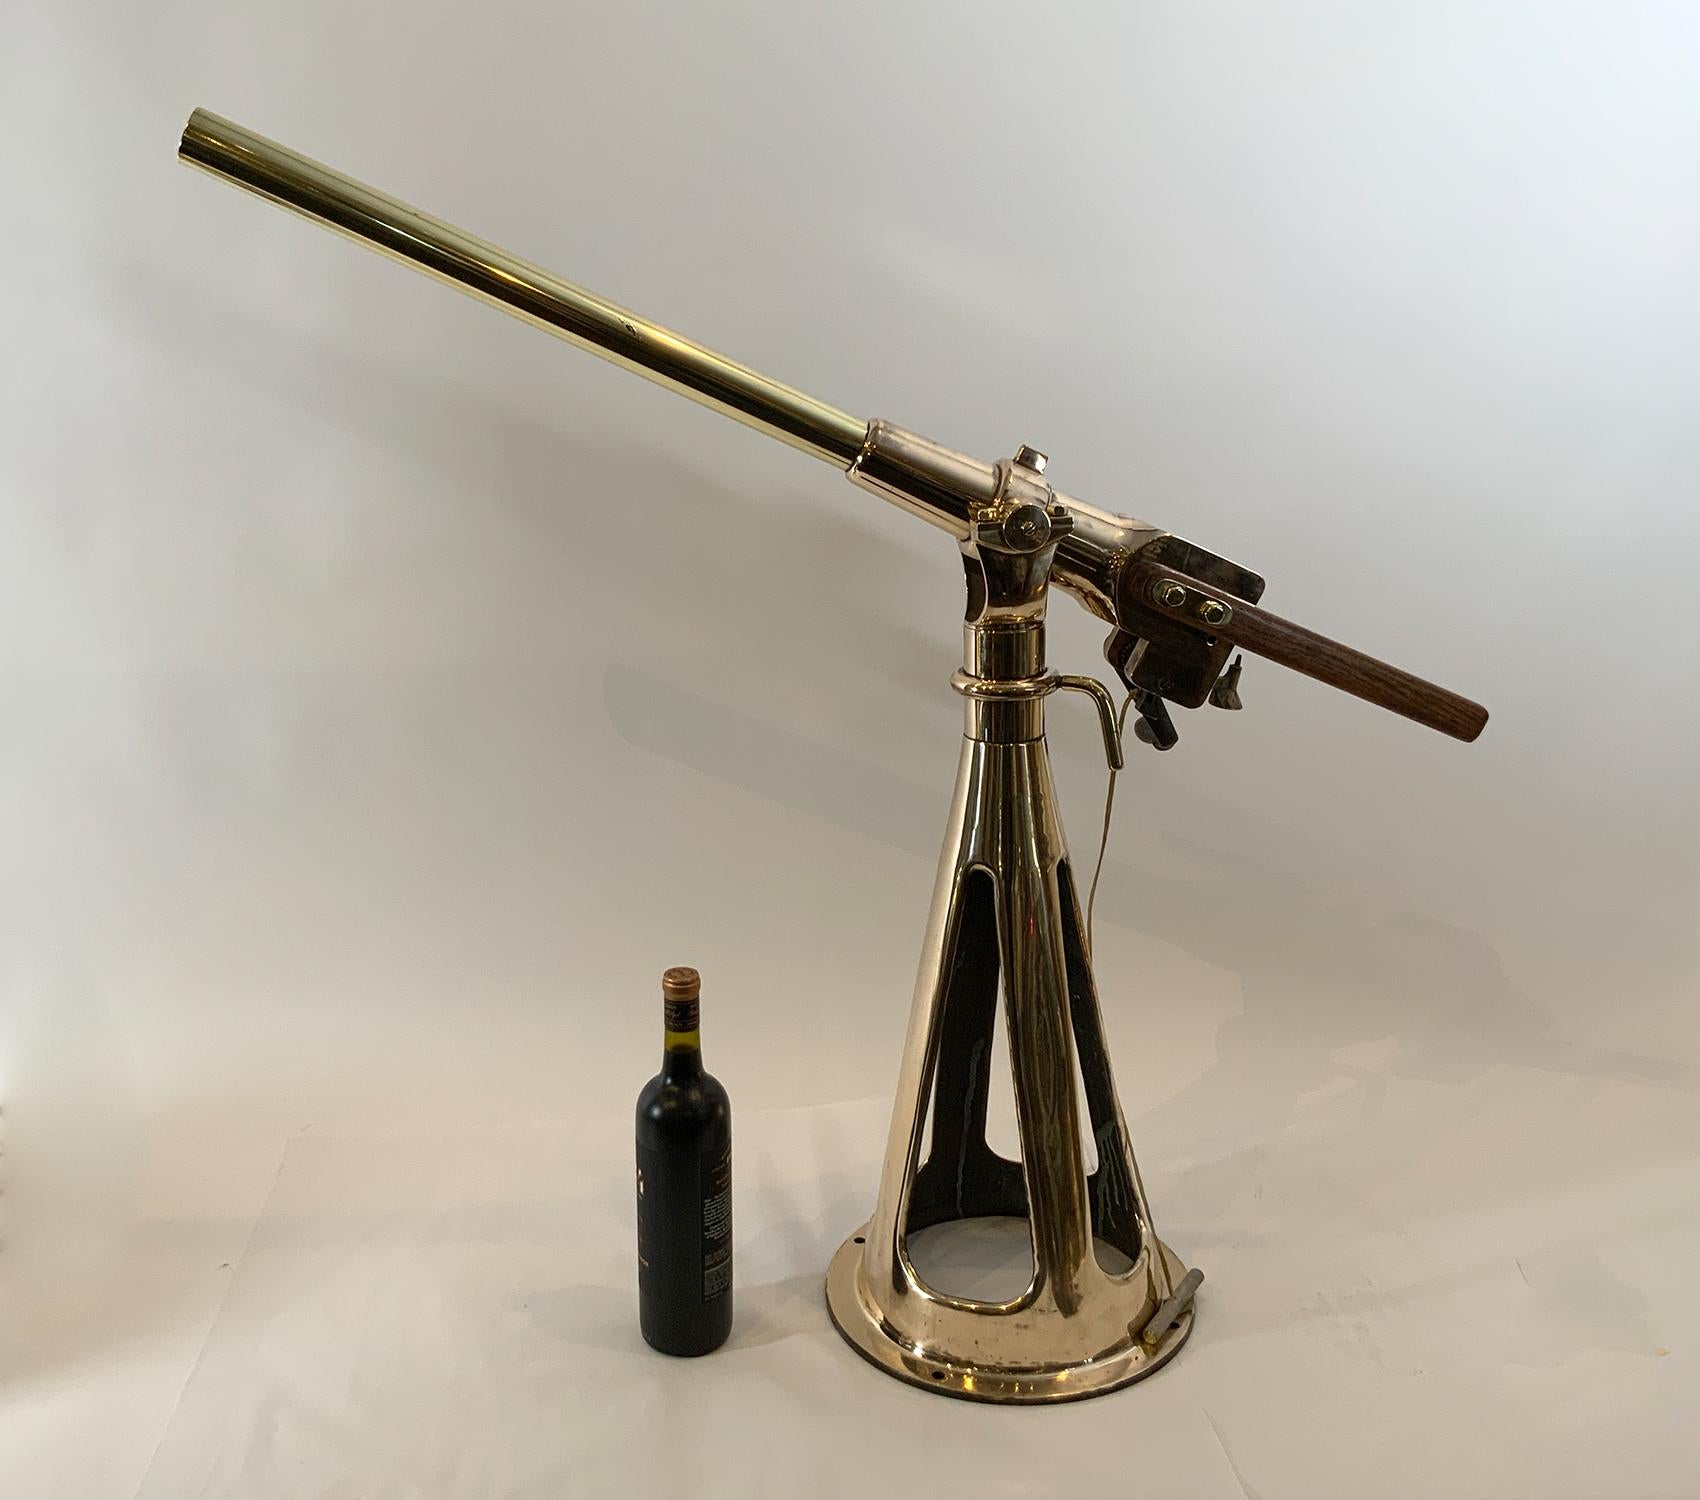 authentic antique cannon for sale